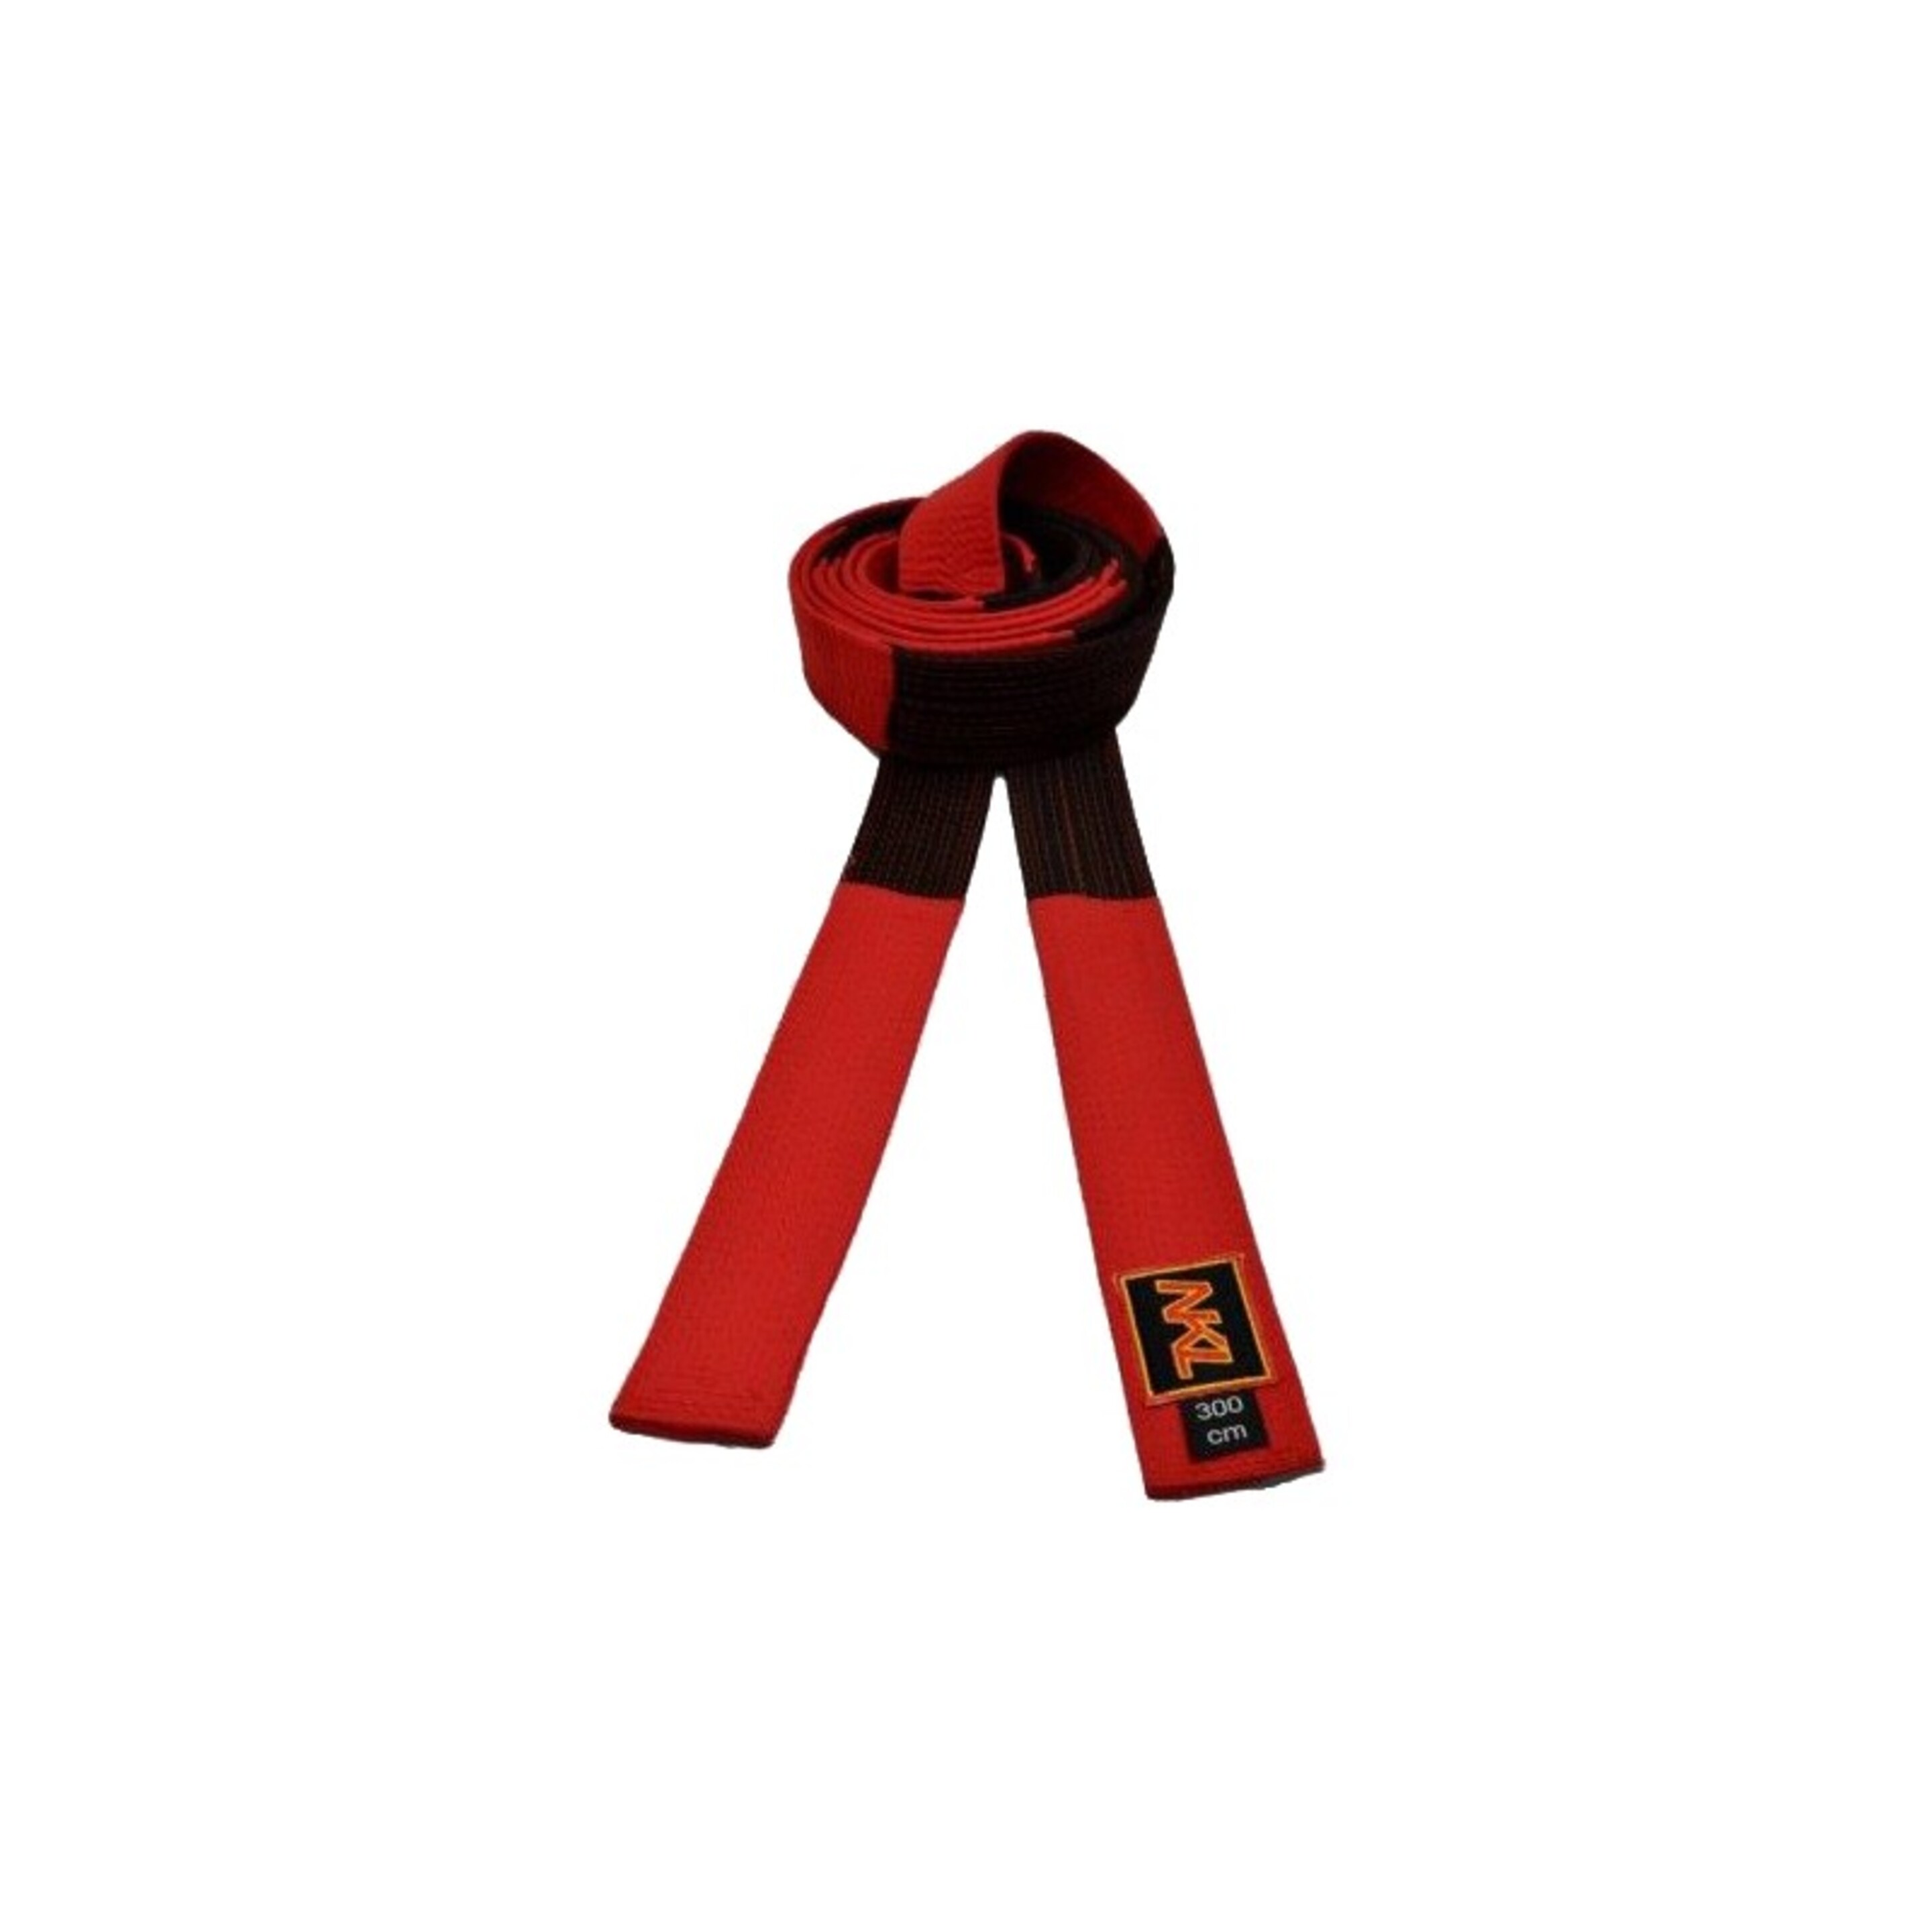 Cinturón Nkl Algodón "5º Dan" - Negro/Rojo  MKP